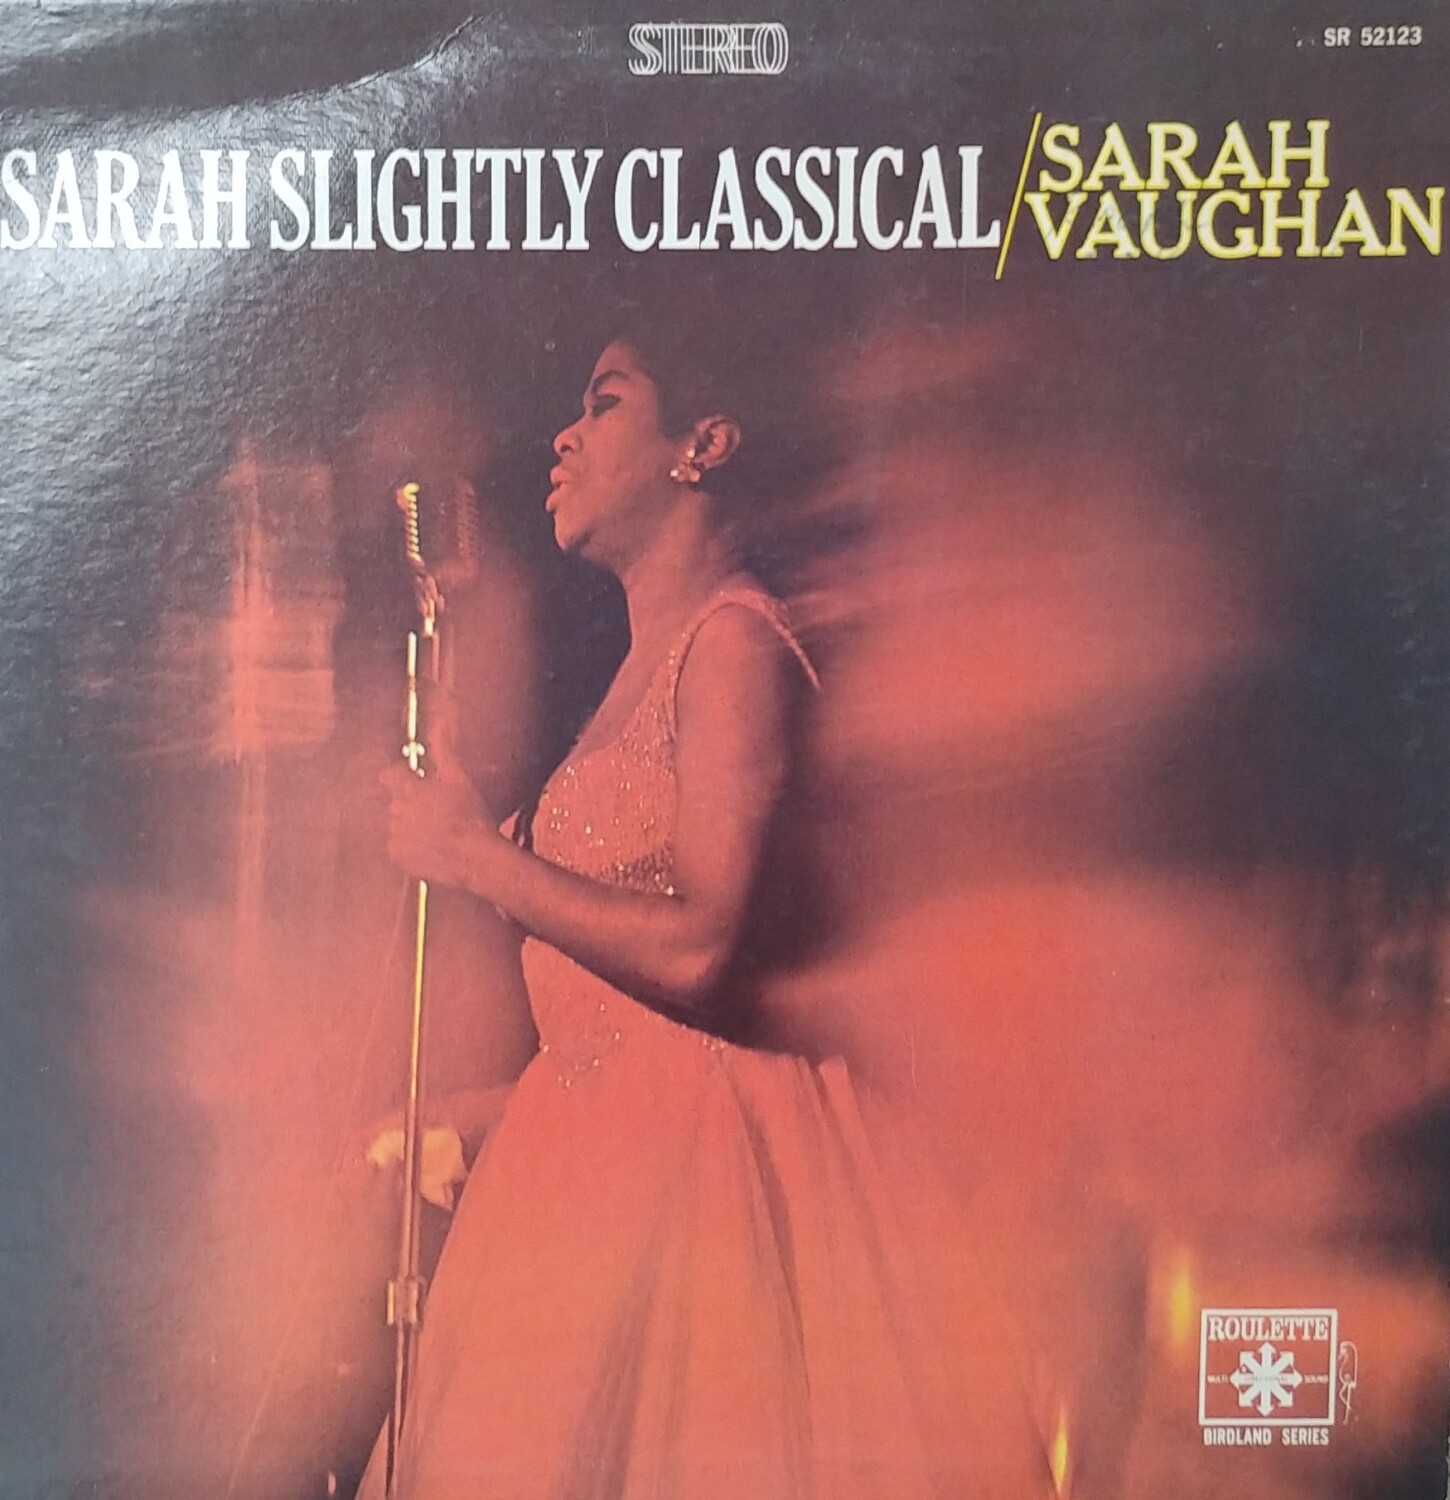 Sarah Vaughan - Sarah Slightly Classical